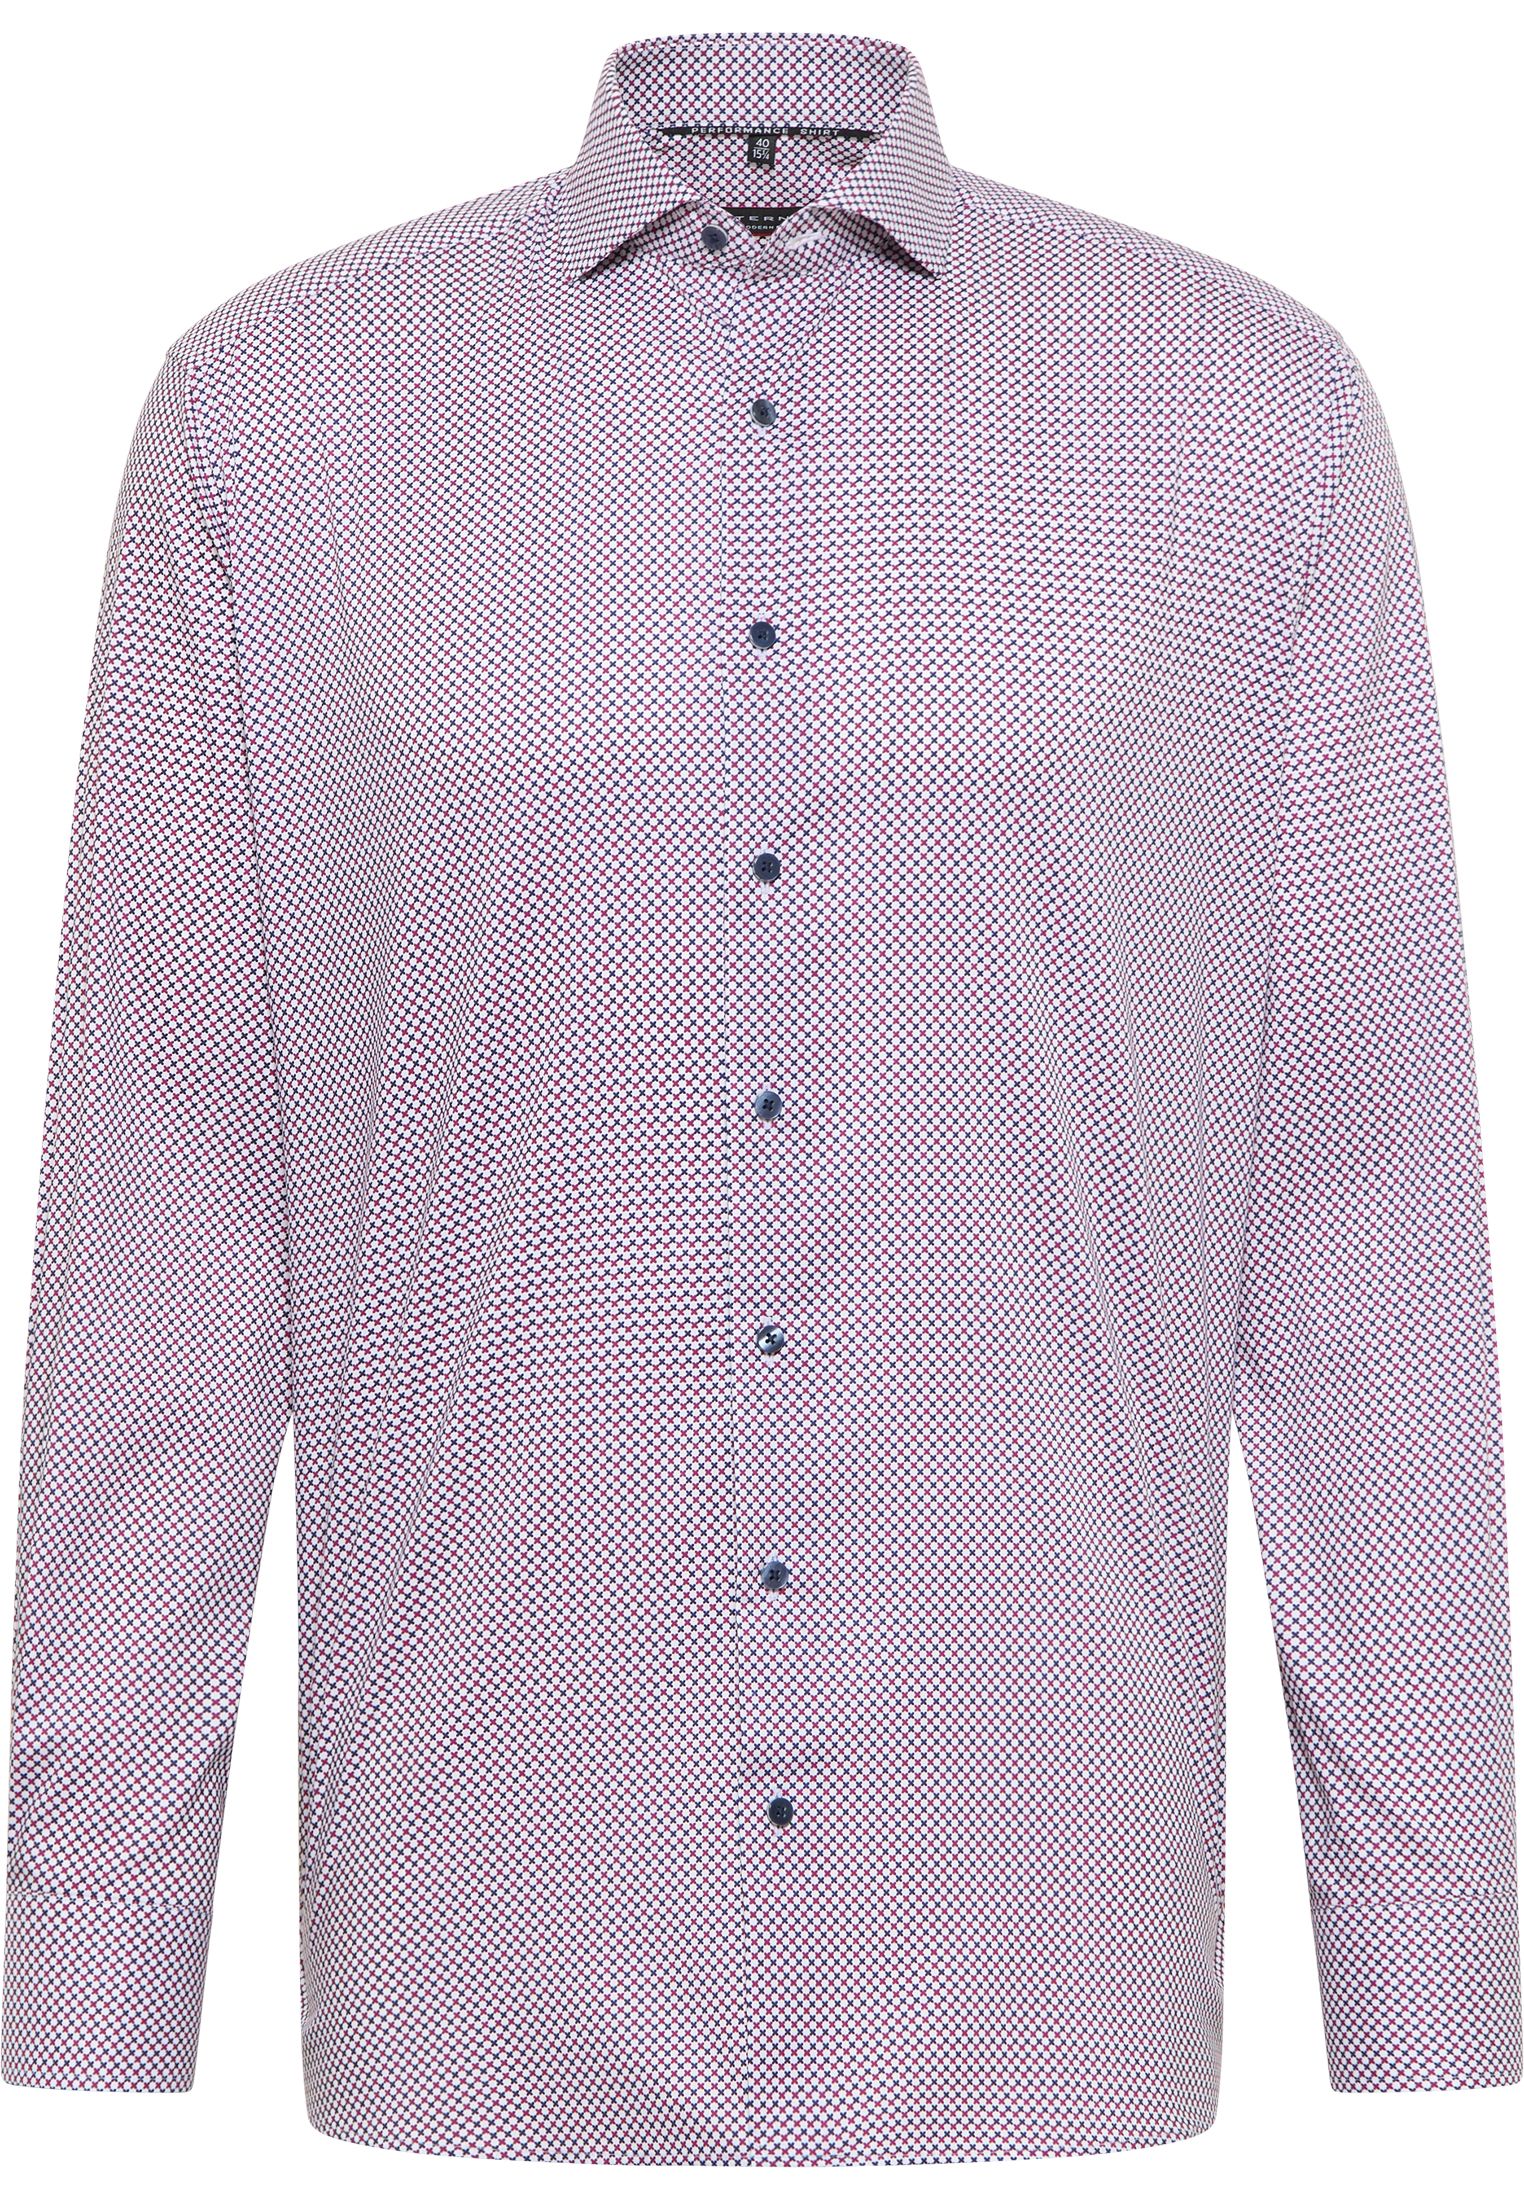 Рубашка мужская ETERNA 4076-55-X17V белая 40